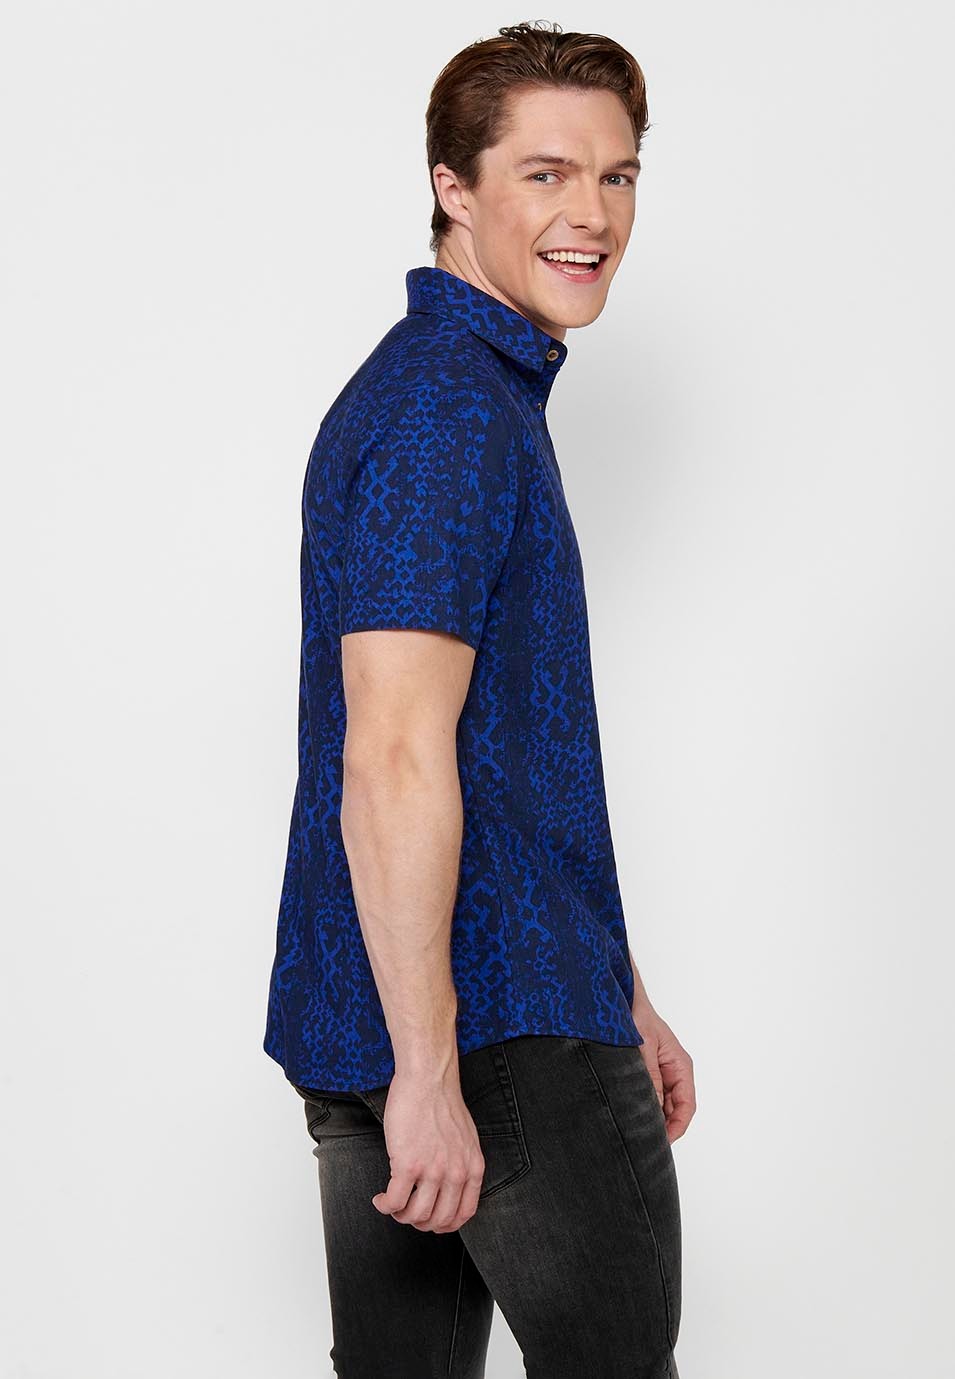 Chemise imprimée à manches courtes et bouton de couleur bleue pour hommes